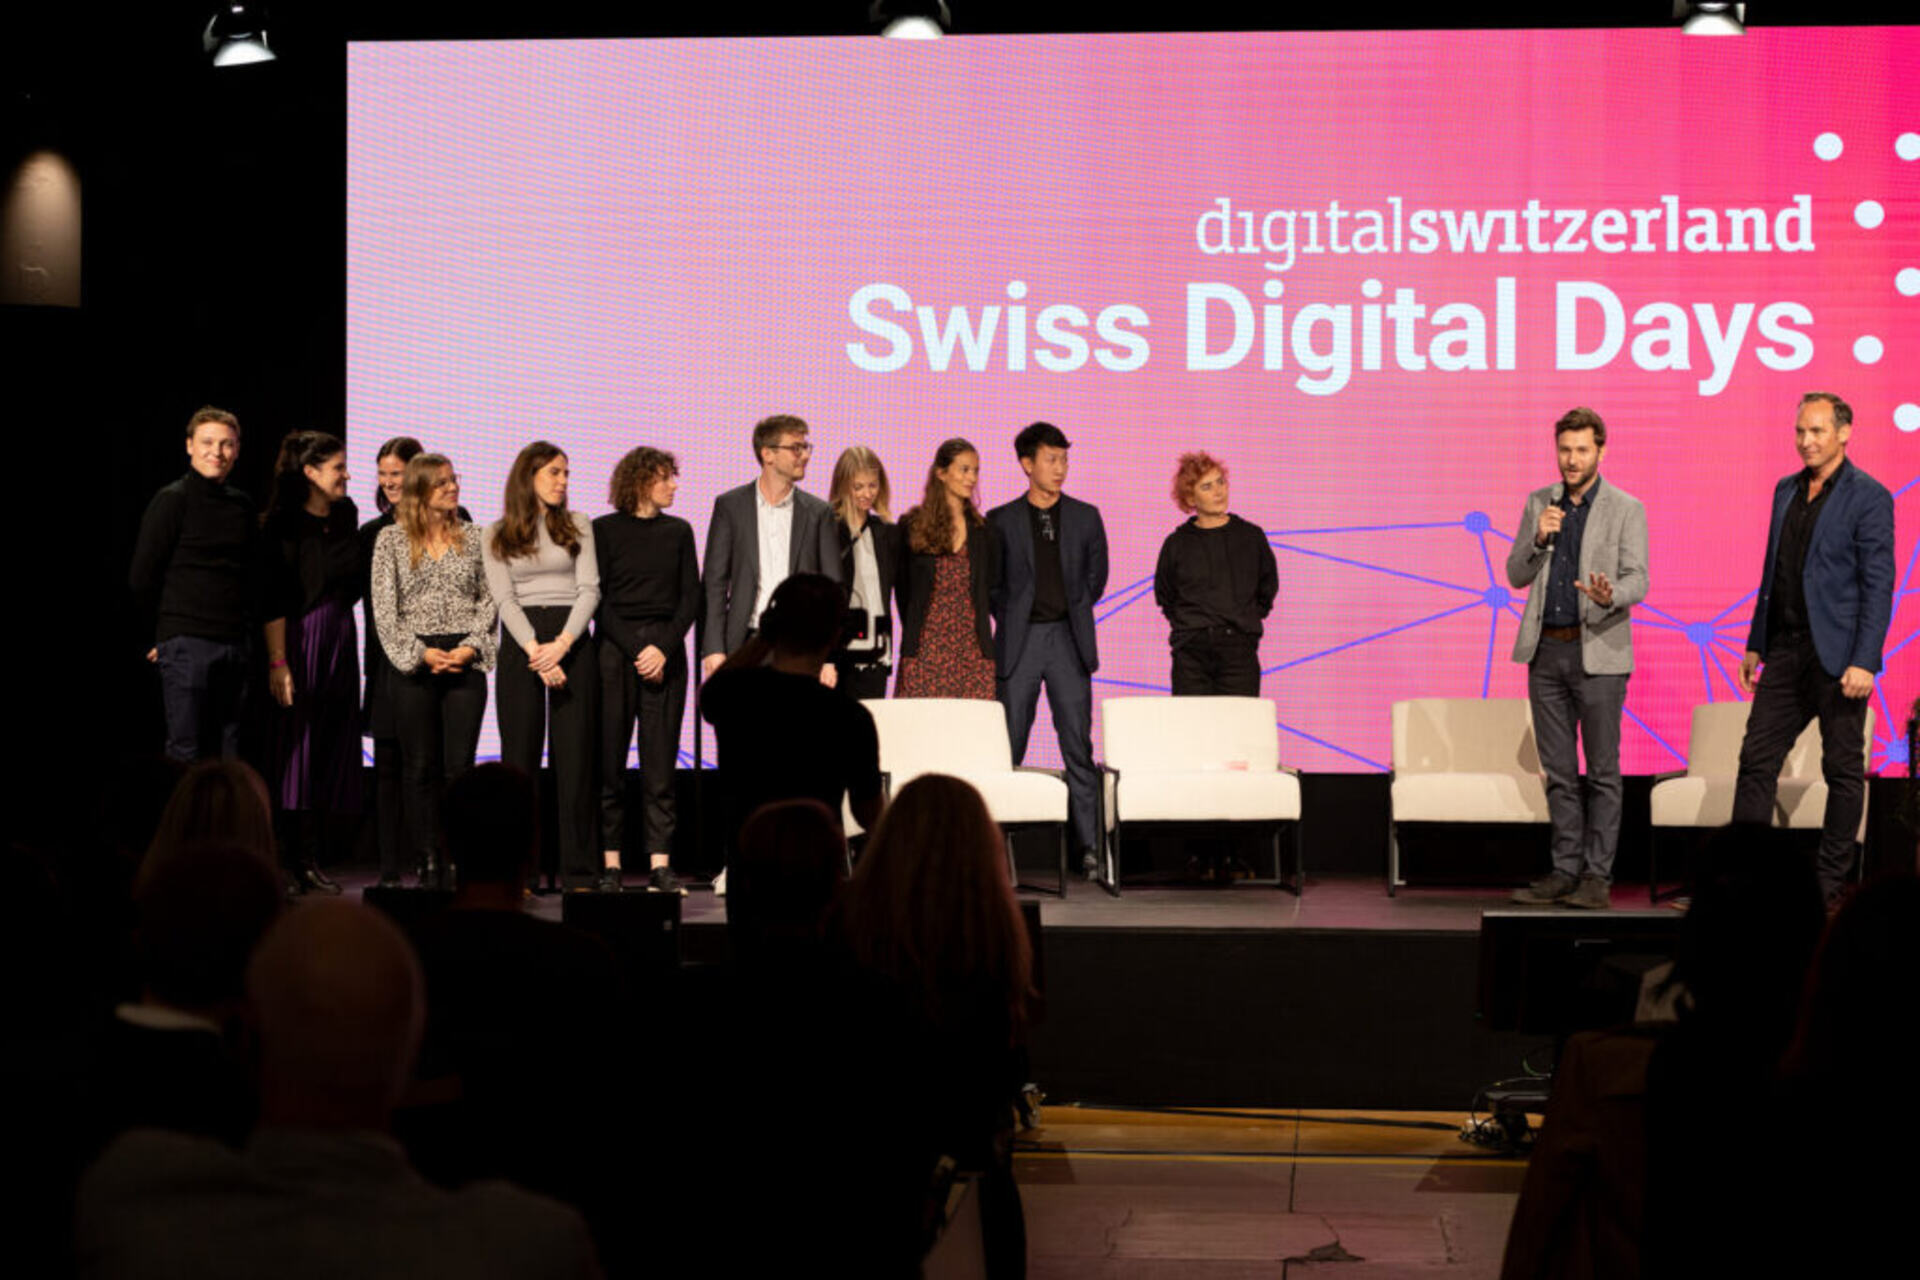 digitalswitzerland: le “Giornate Digitali Svizzere” sono un fiore all’occhiello di digitalswitzerland, sia in presenza, che in conference call